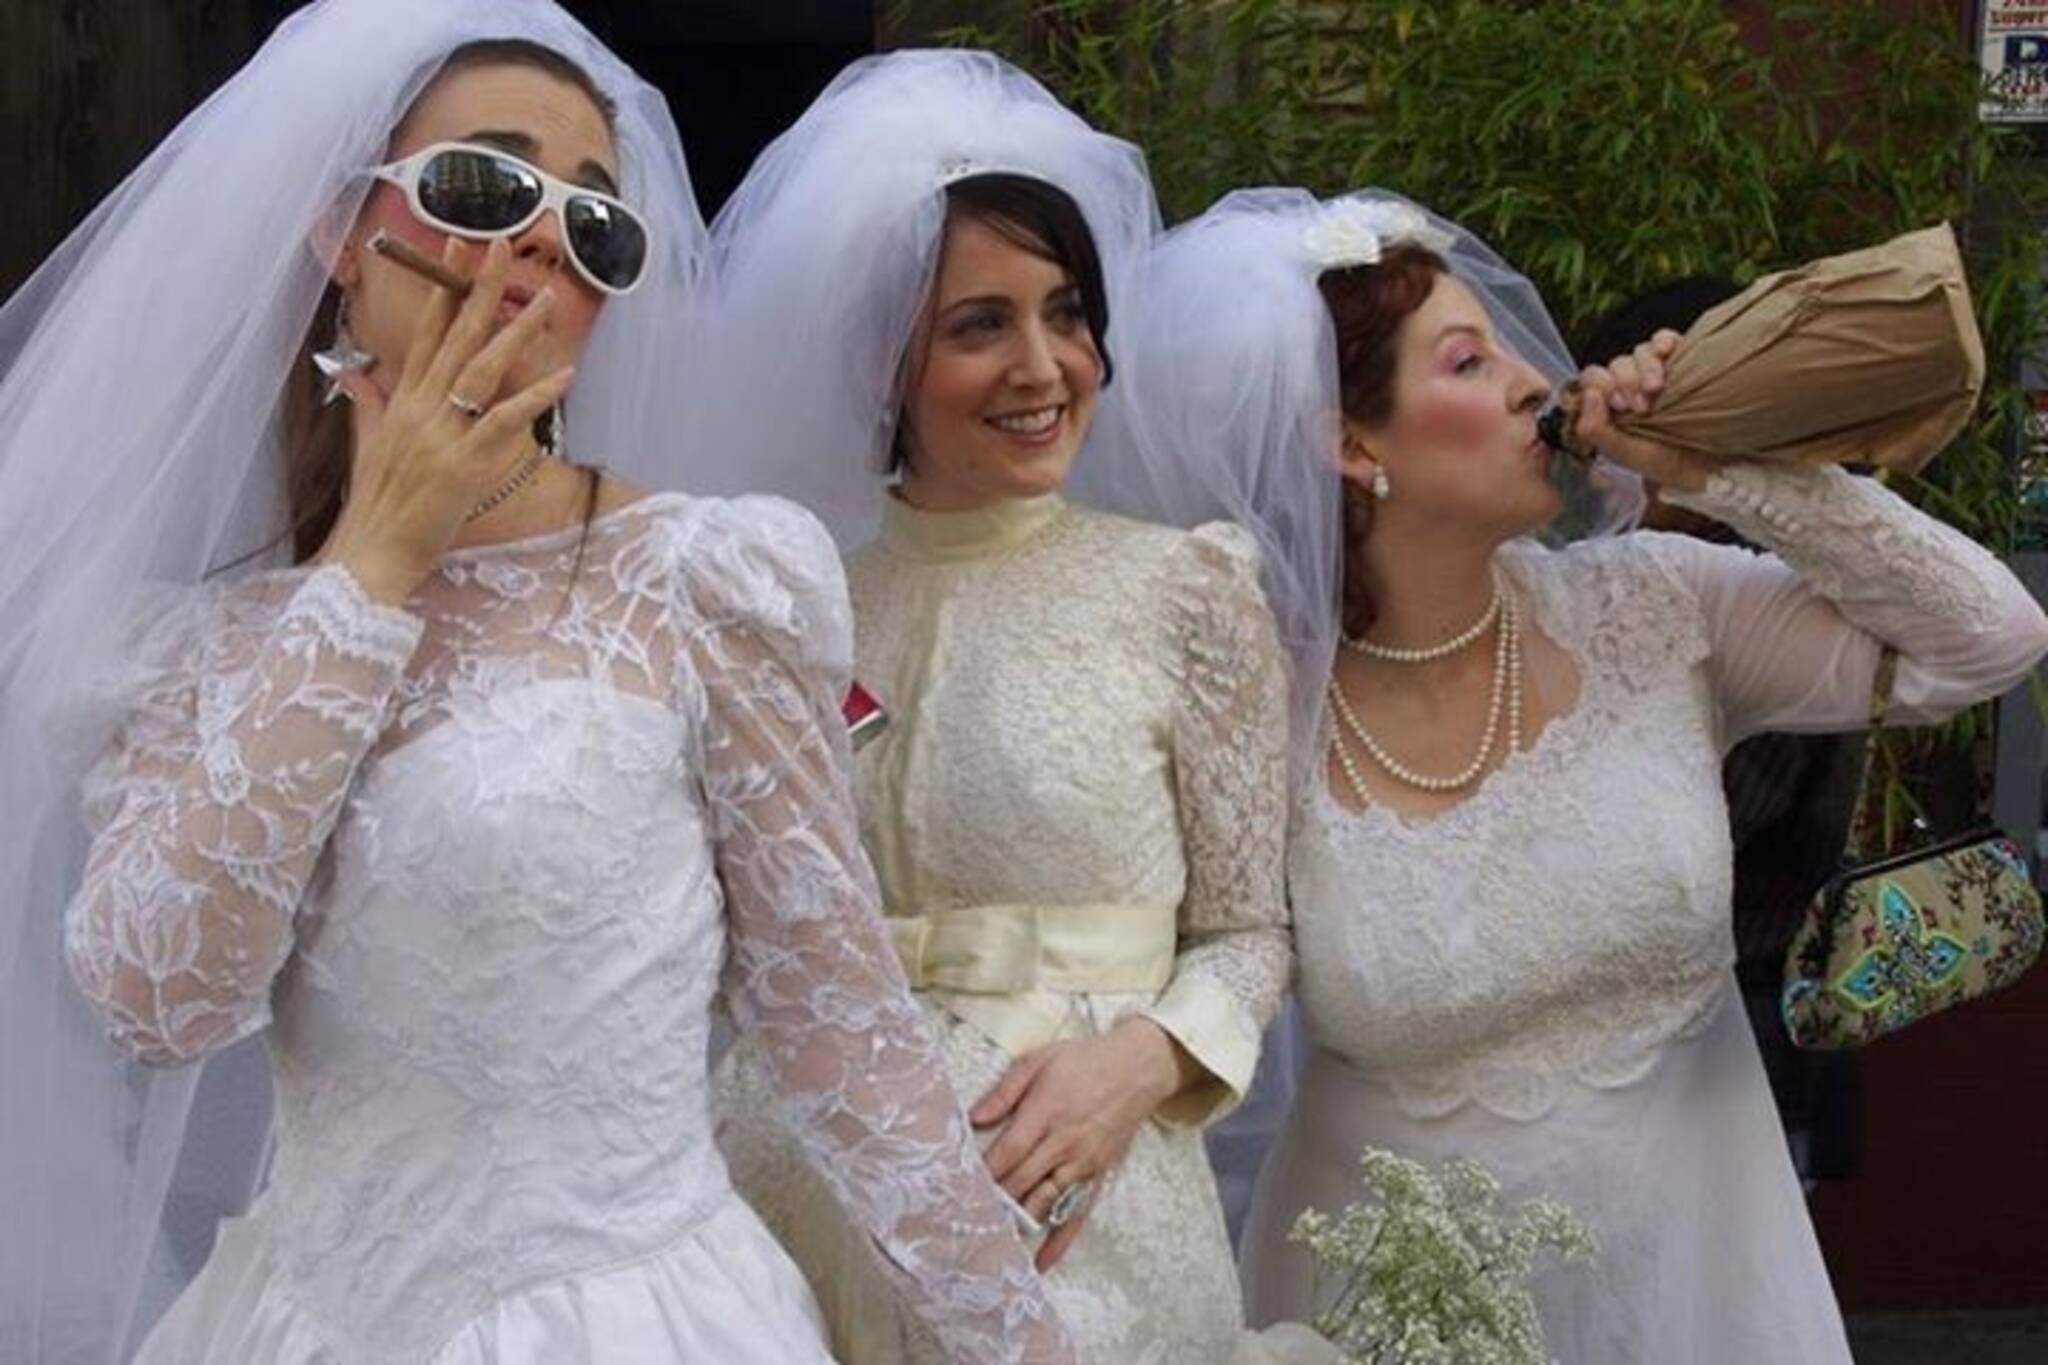 Brides of March Toronto 2014!